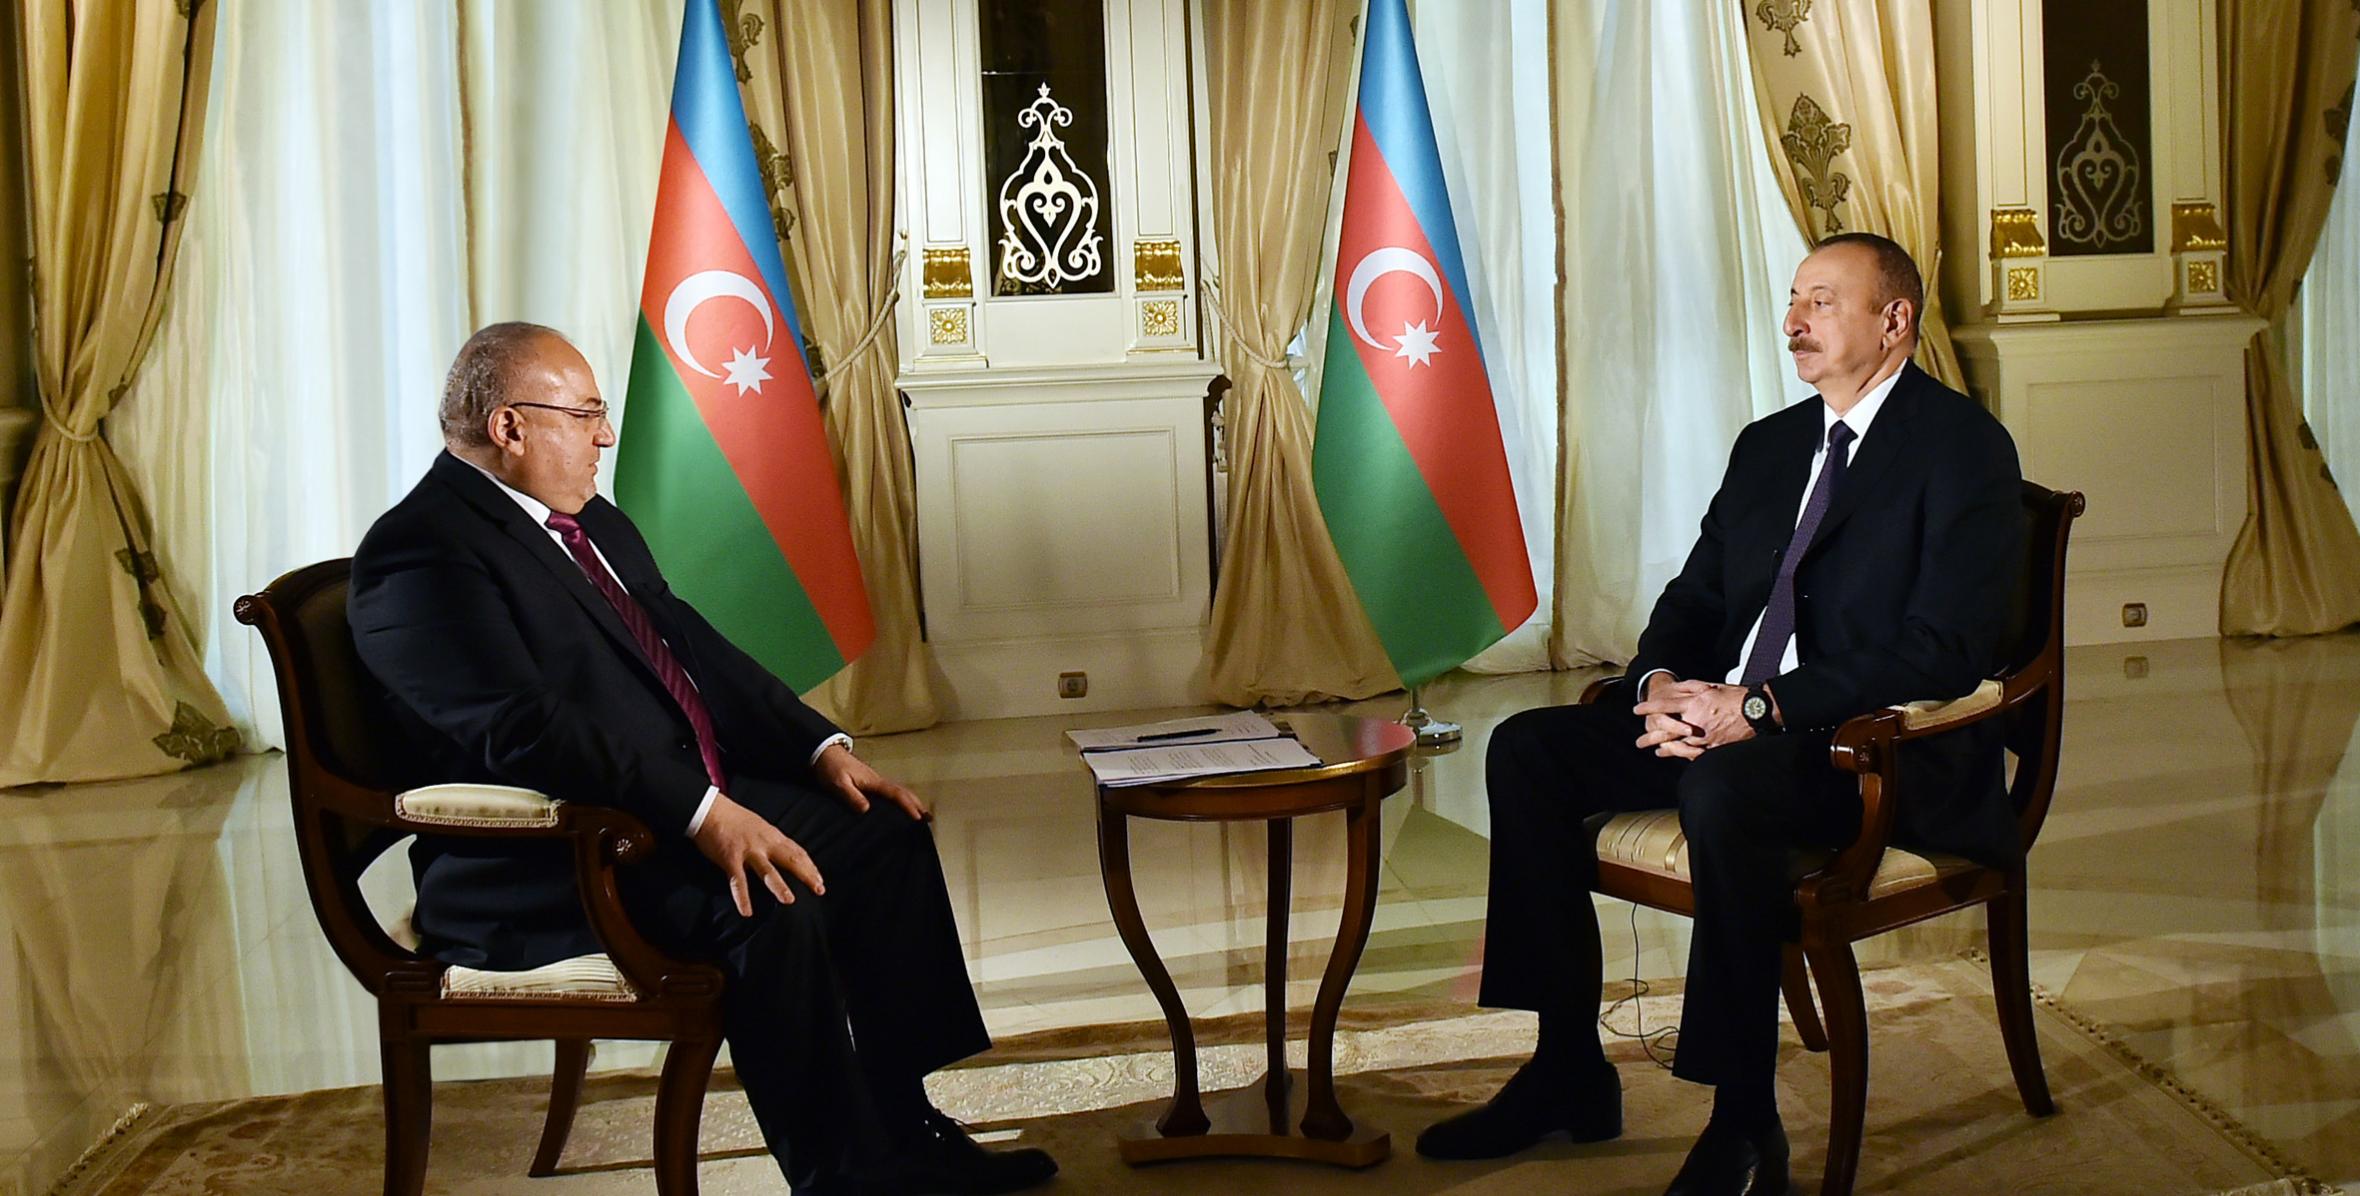 Ilham Aliyev was interviewed by Al Jazeera TV correspondent